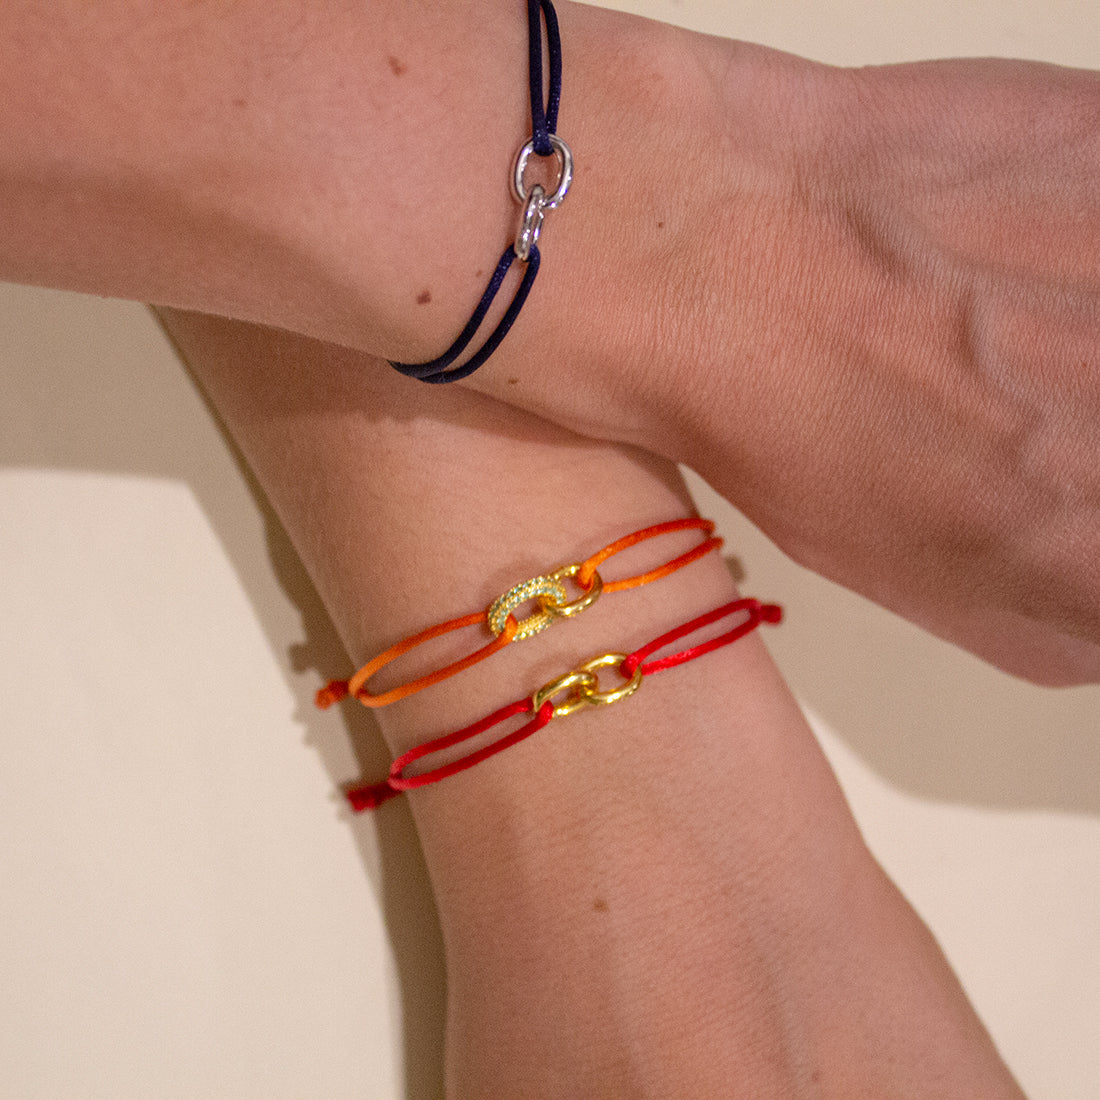 pulsera de cuerda roja con dos eslabones de oro amarillo entrelazados, cuerda roja de 1mm cerrada por ocho nudos 